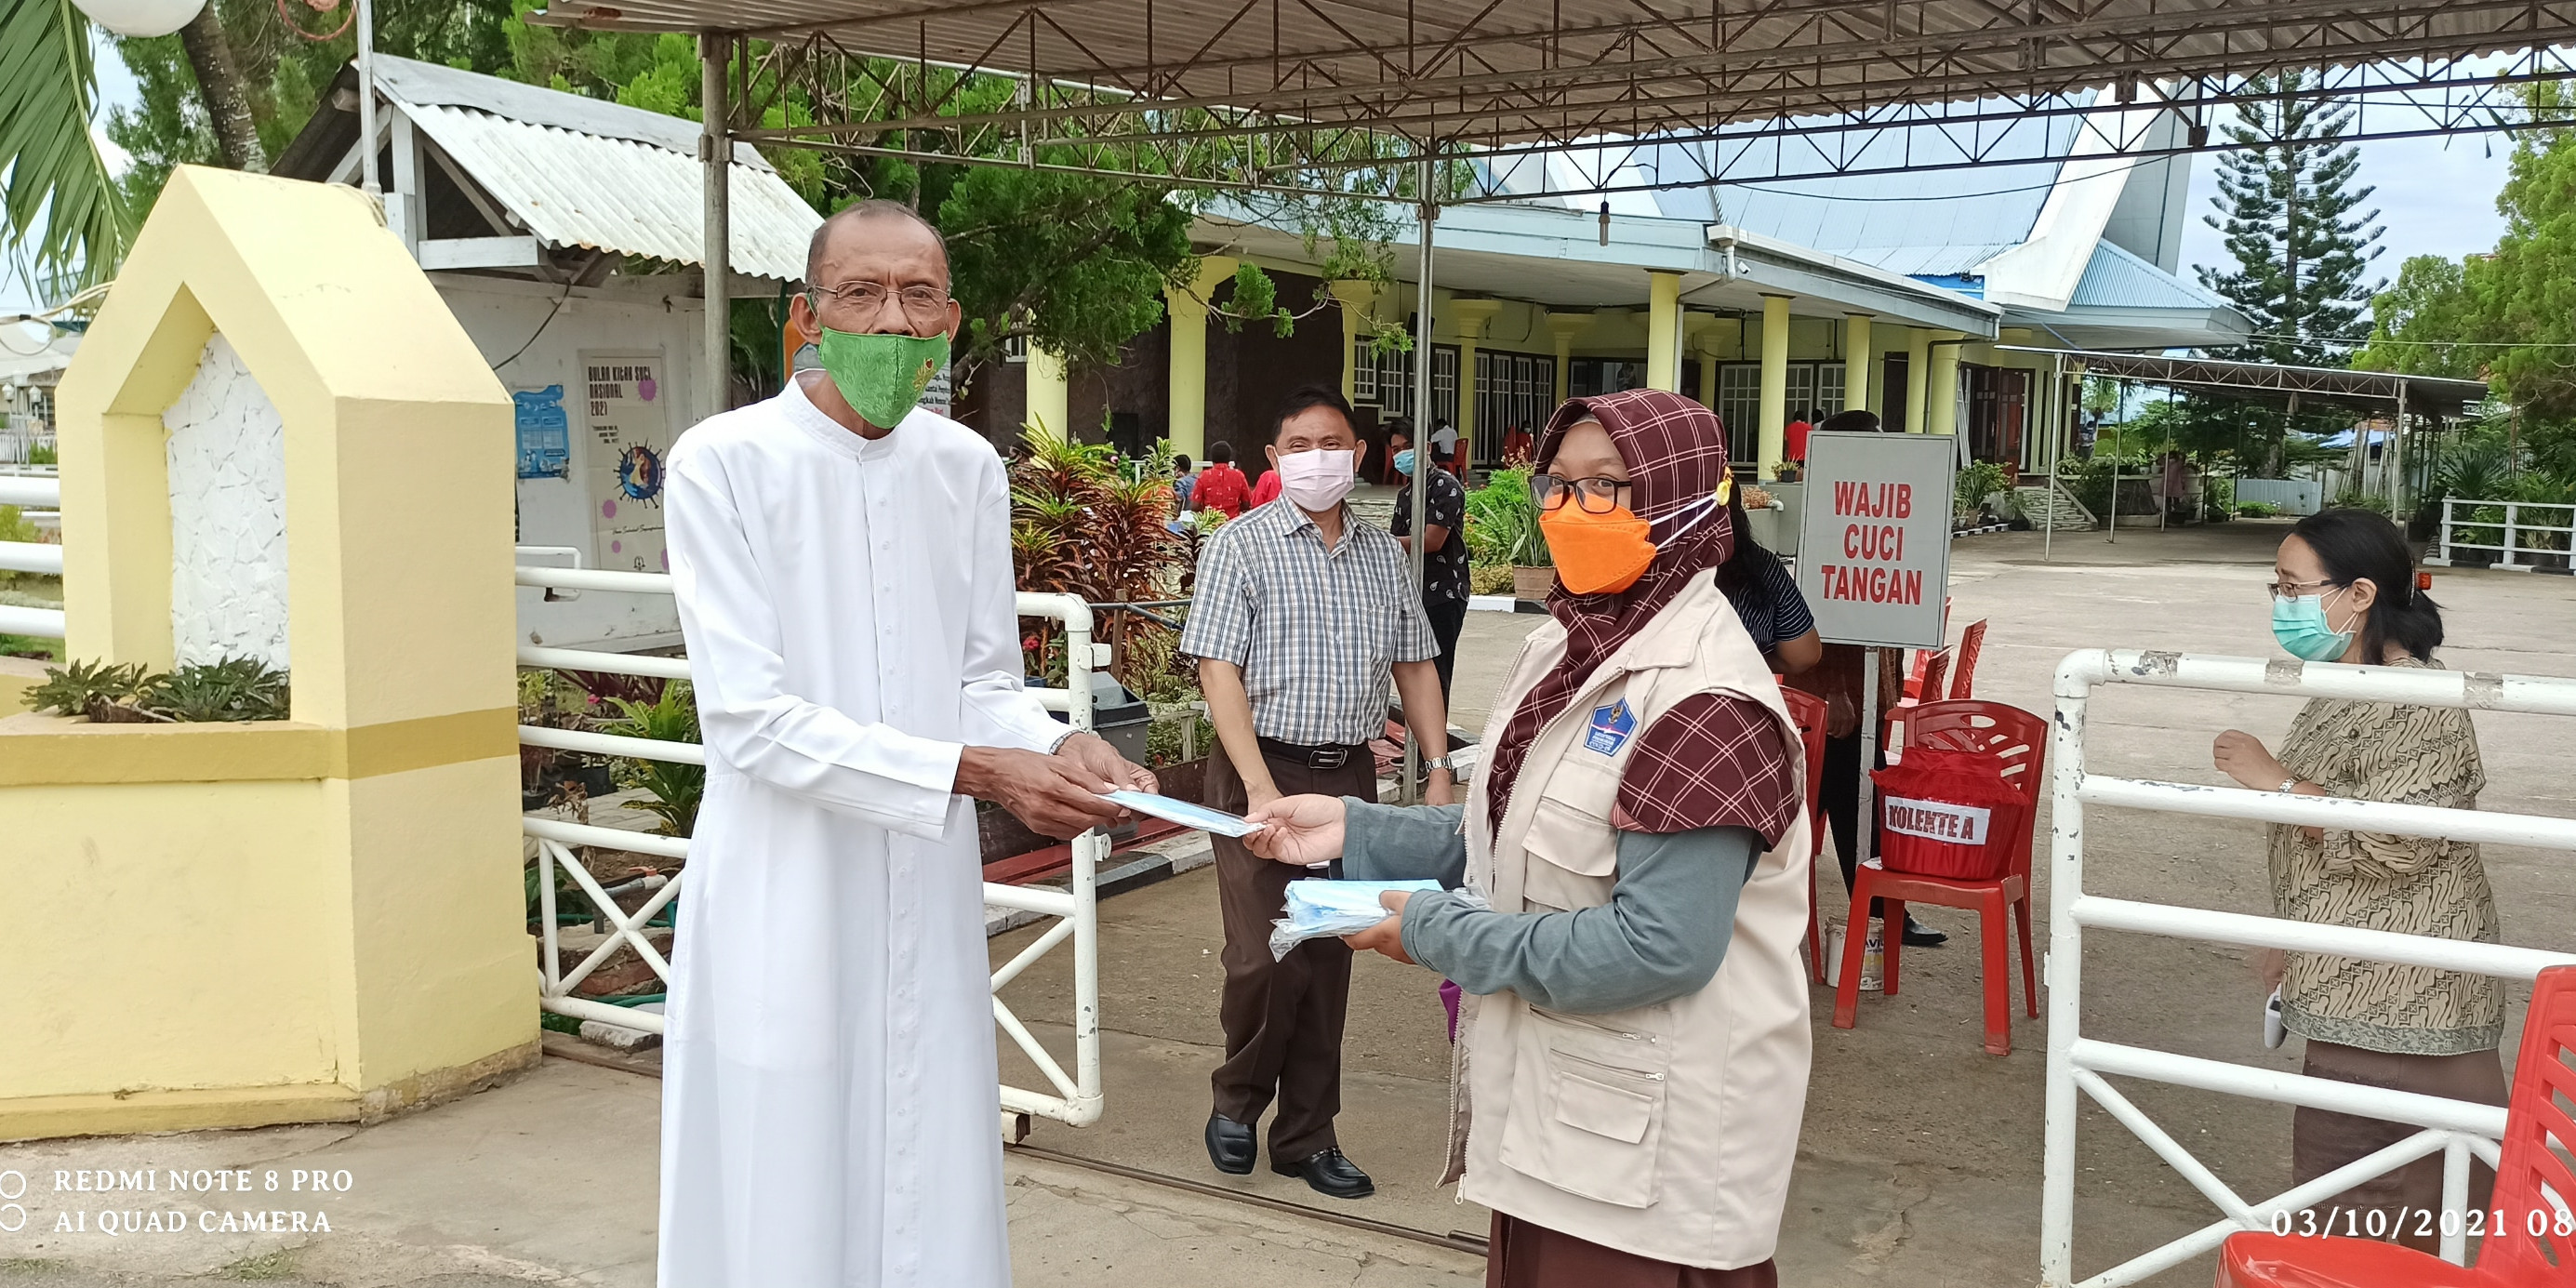 Meski Hari Libur, Relawan Prokes Merauke Tetap Jalankan Aktivitas Distribusikan Masker ke Masyarakat